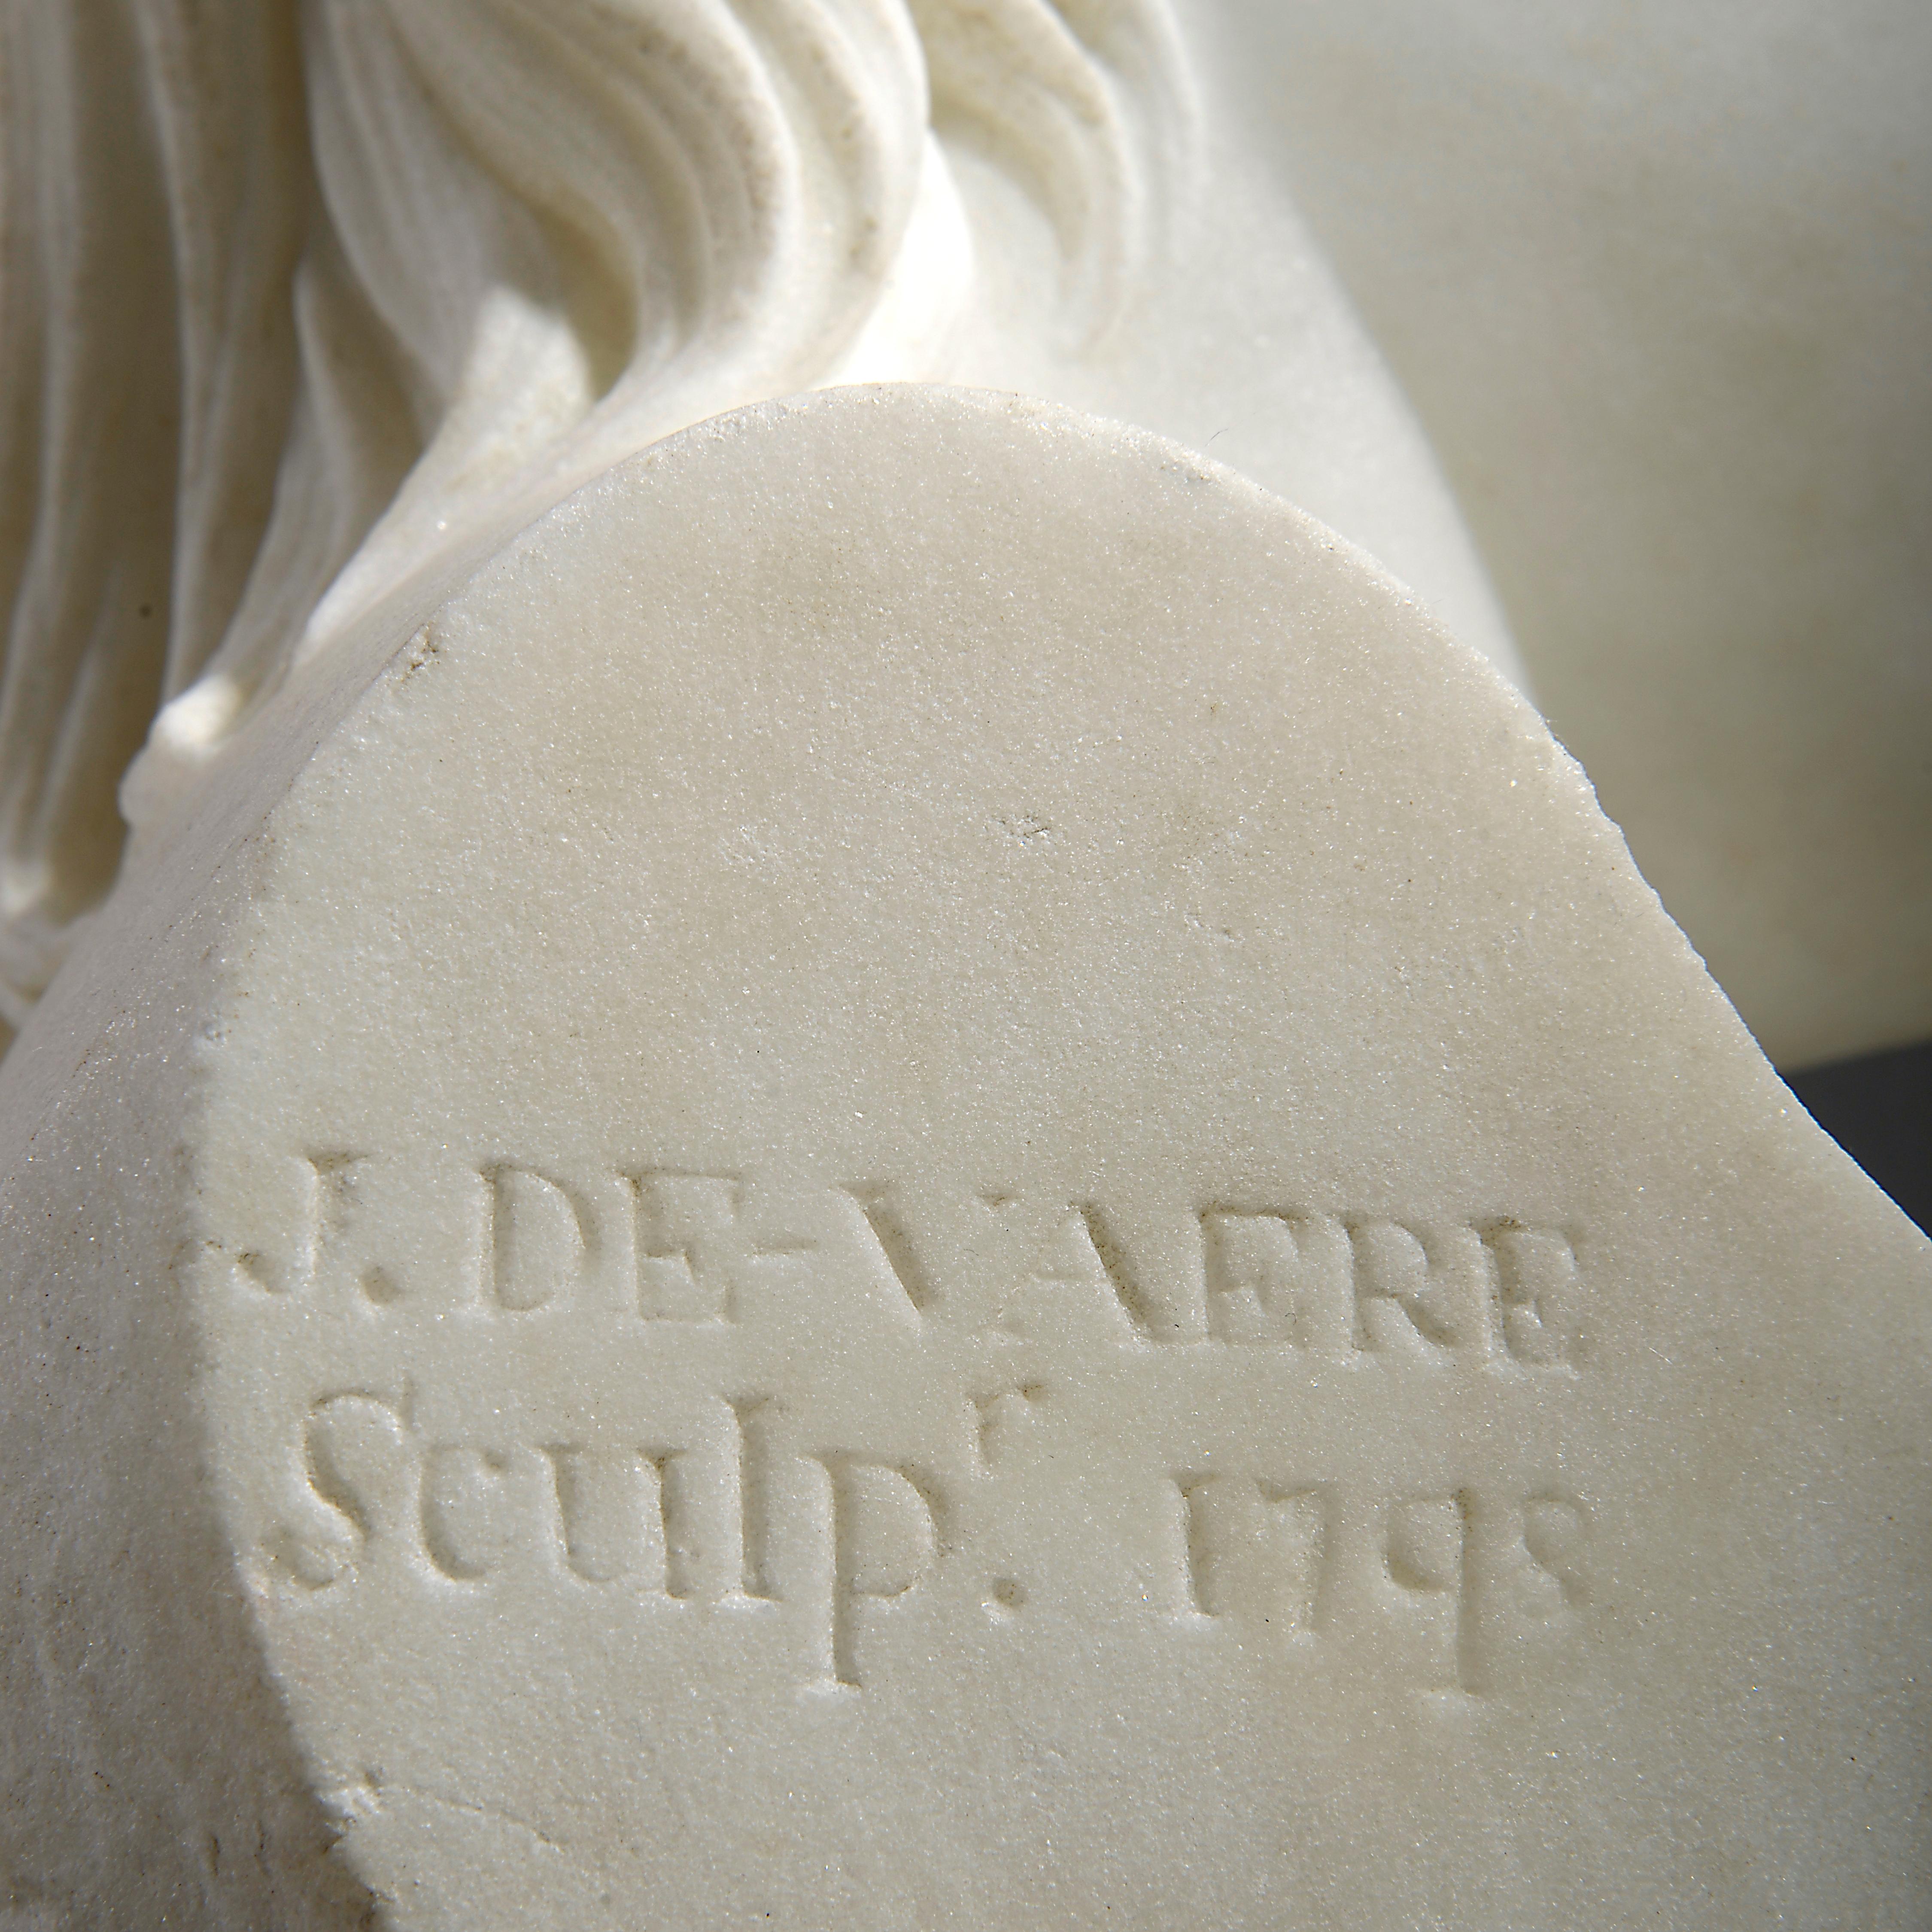 Une belle paire de bustes en marbre de statuaire George III représentant un garçon et une fille par John de Vaere (1755 - 1830), 1798.

Signé J DE-VAERE Sculpr. 1798.

Compte tenu de la sensibilité et de la qualité du sculpteur qu'il était, on